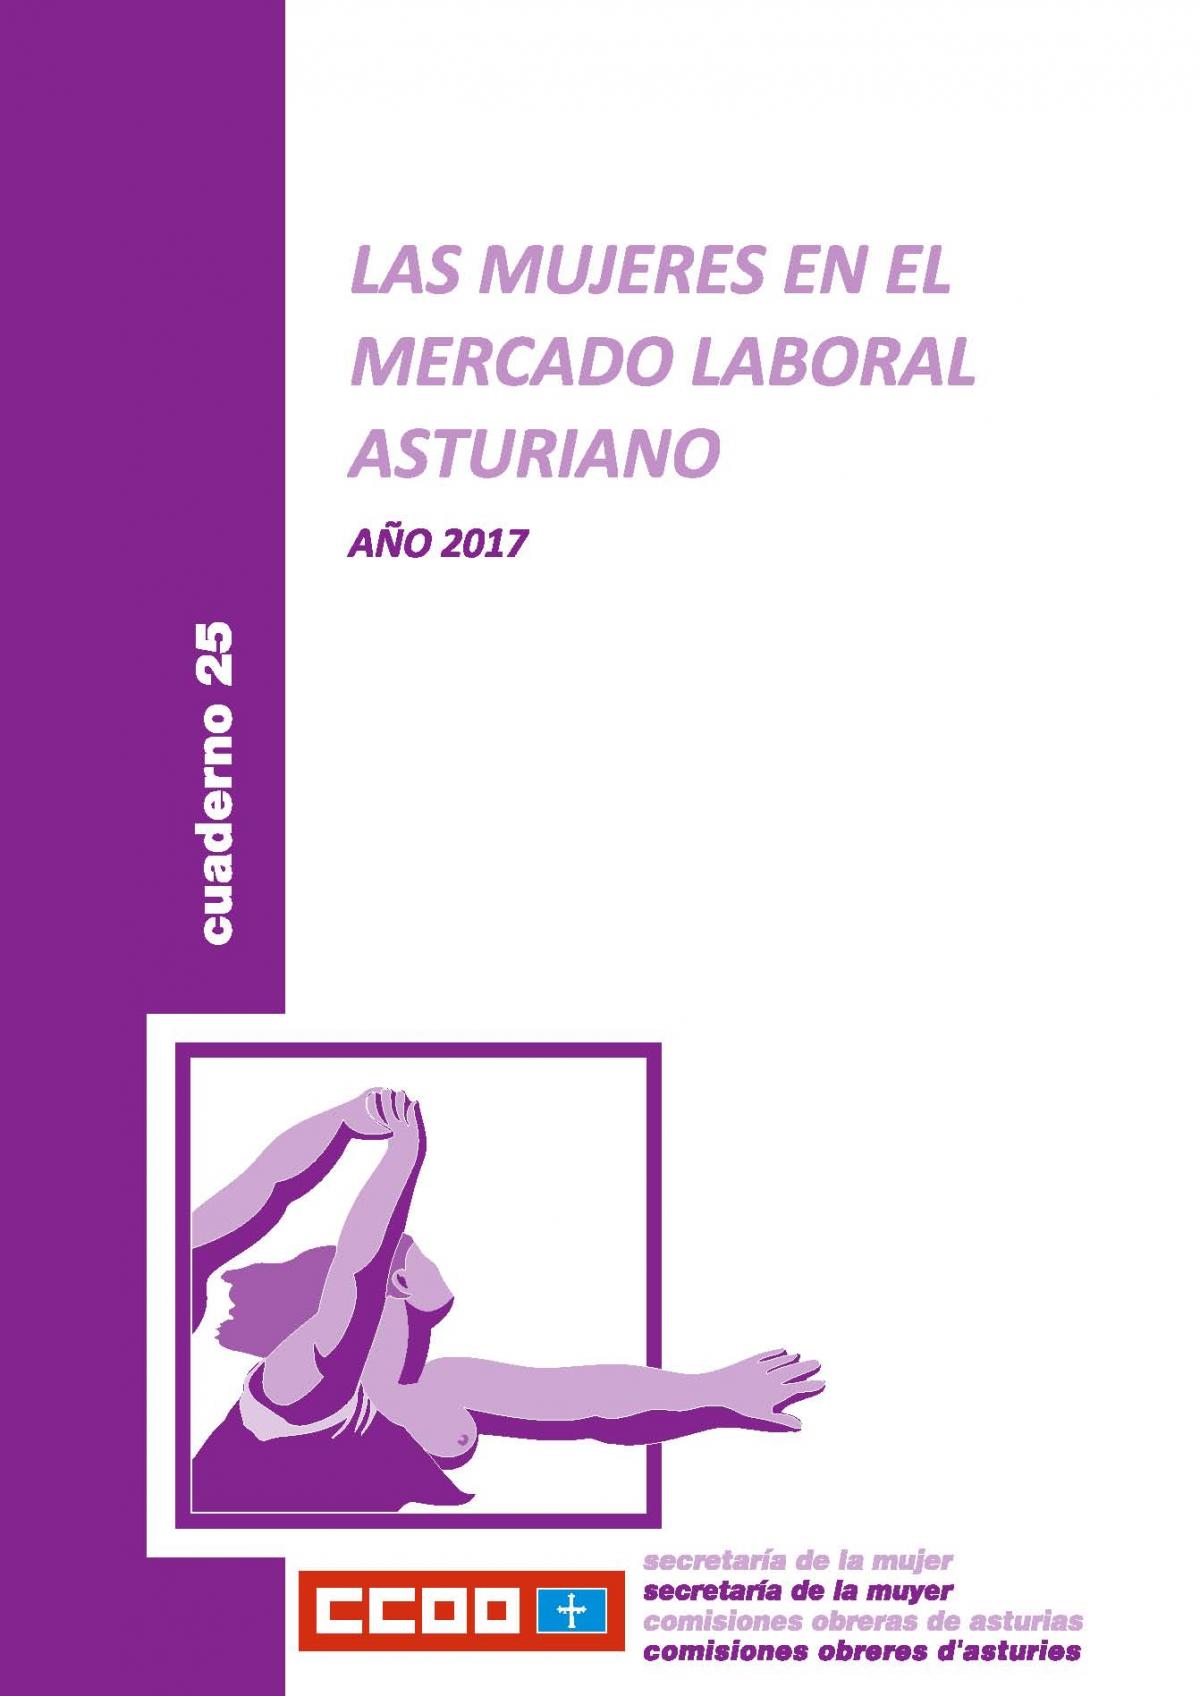 Las mujeres en el mercado laboral asturiano